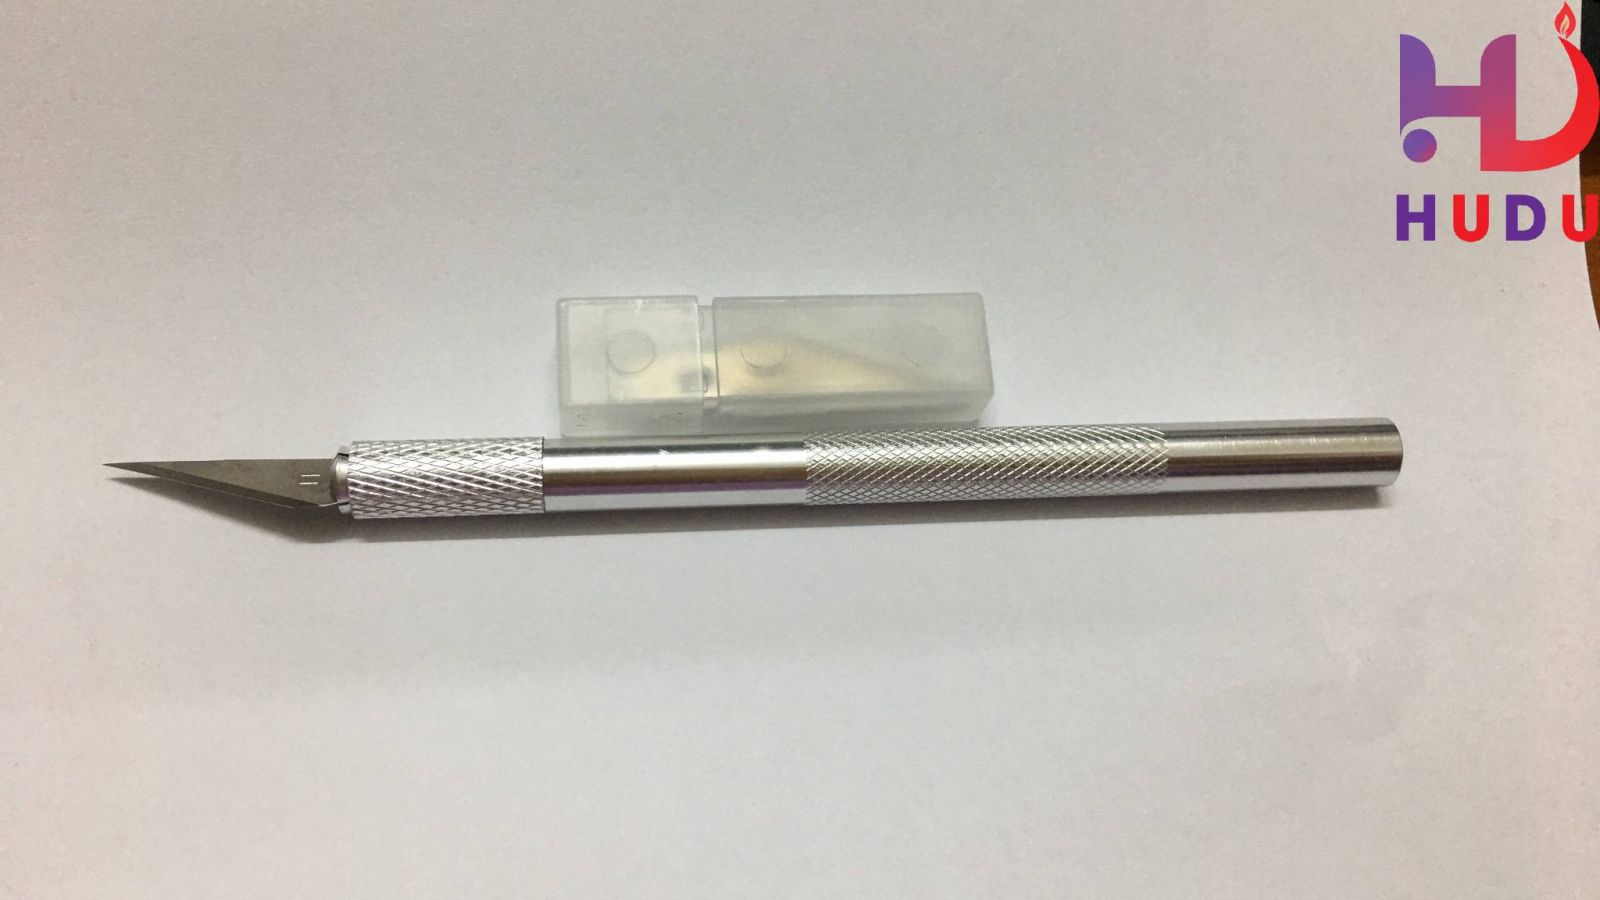 Linh kiện điện tử Hudu cung cấp bộ dao cắt mạch đảm bảo chất lượng tốt